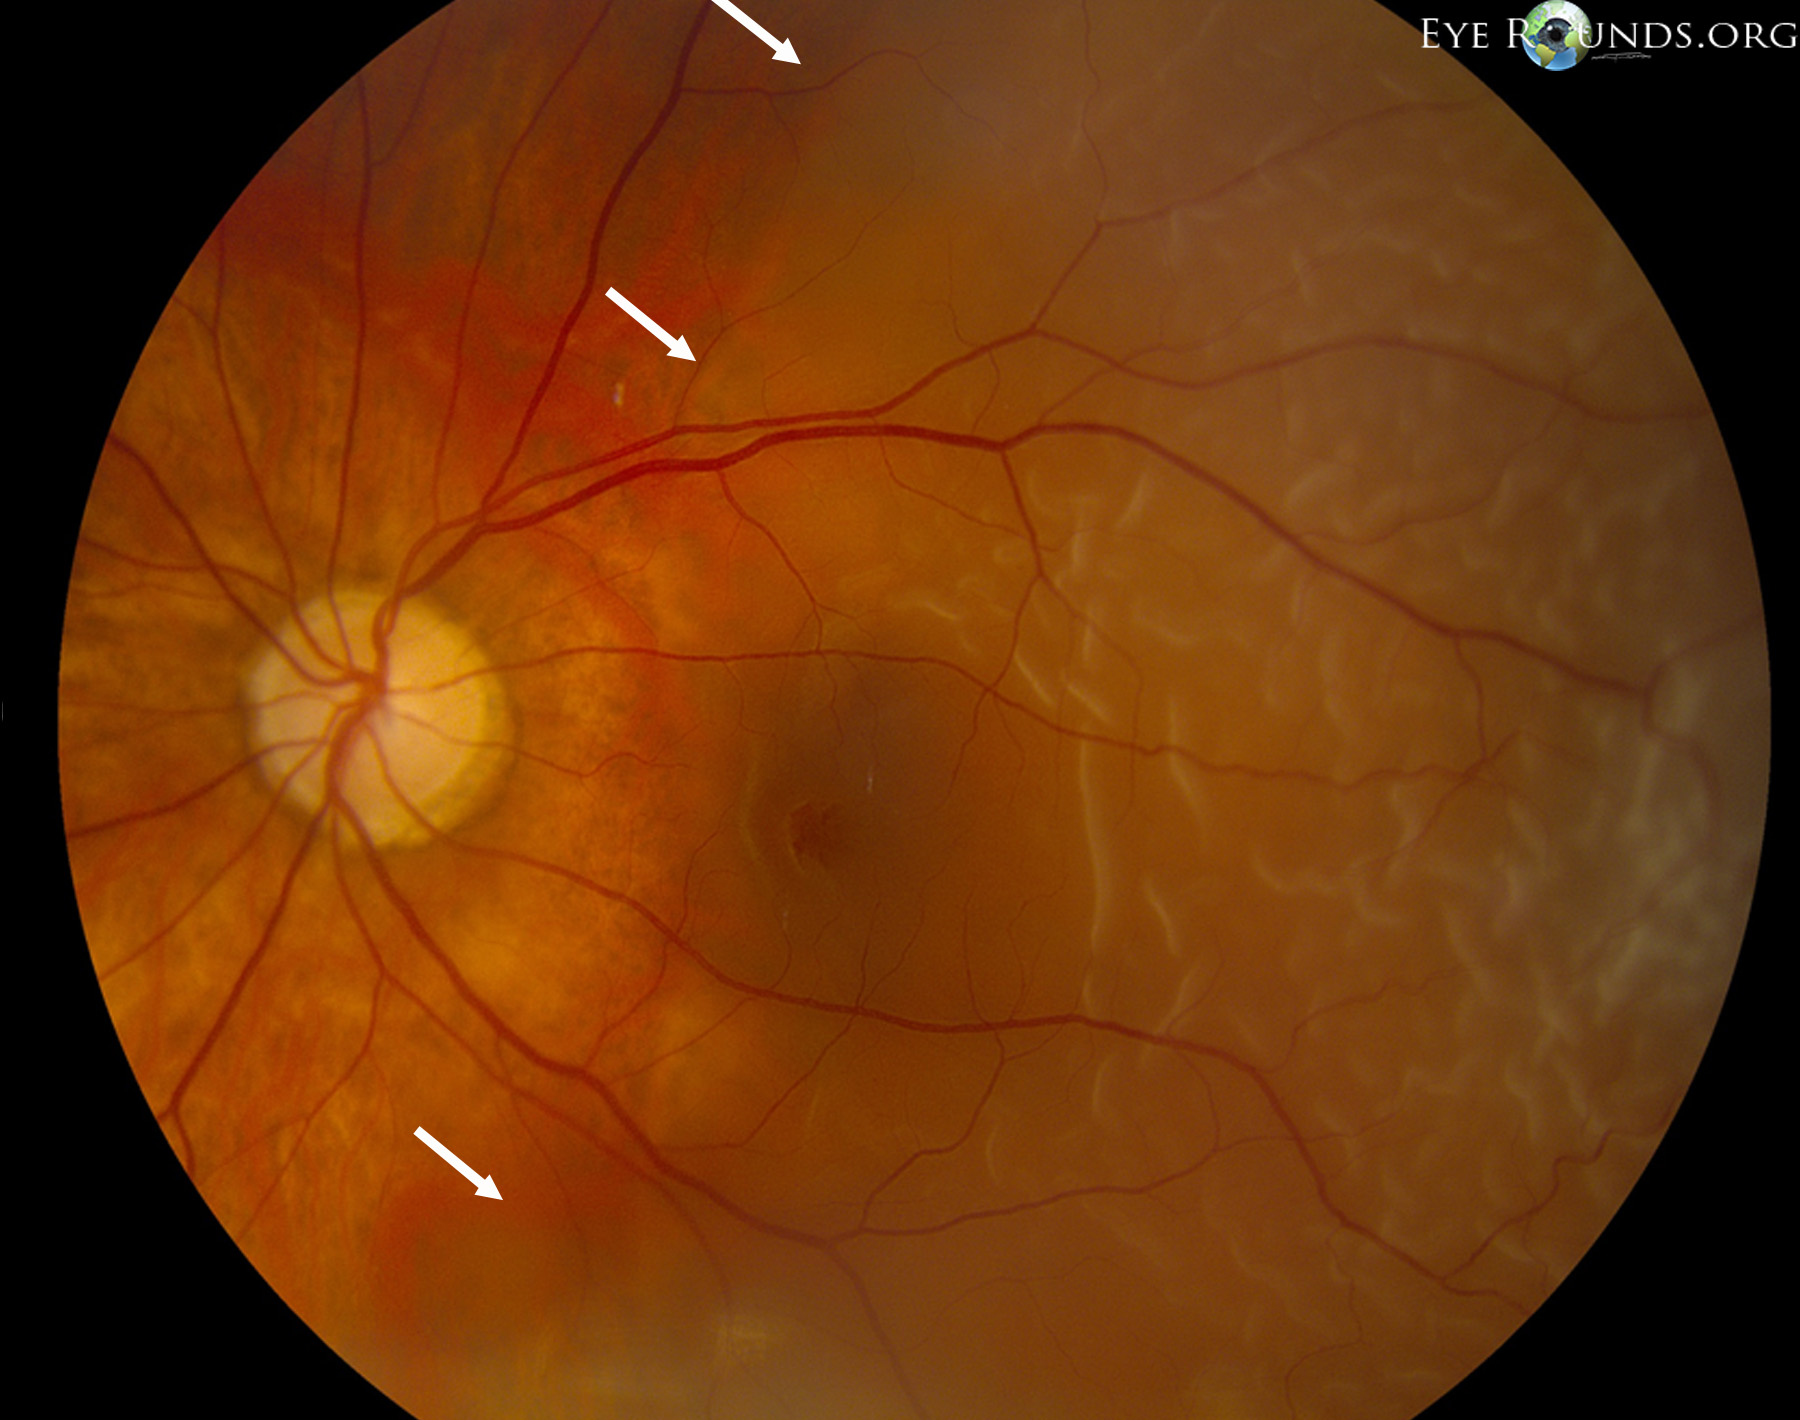 detached retina symptoms video